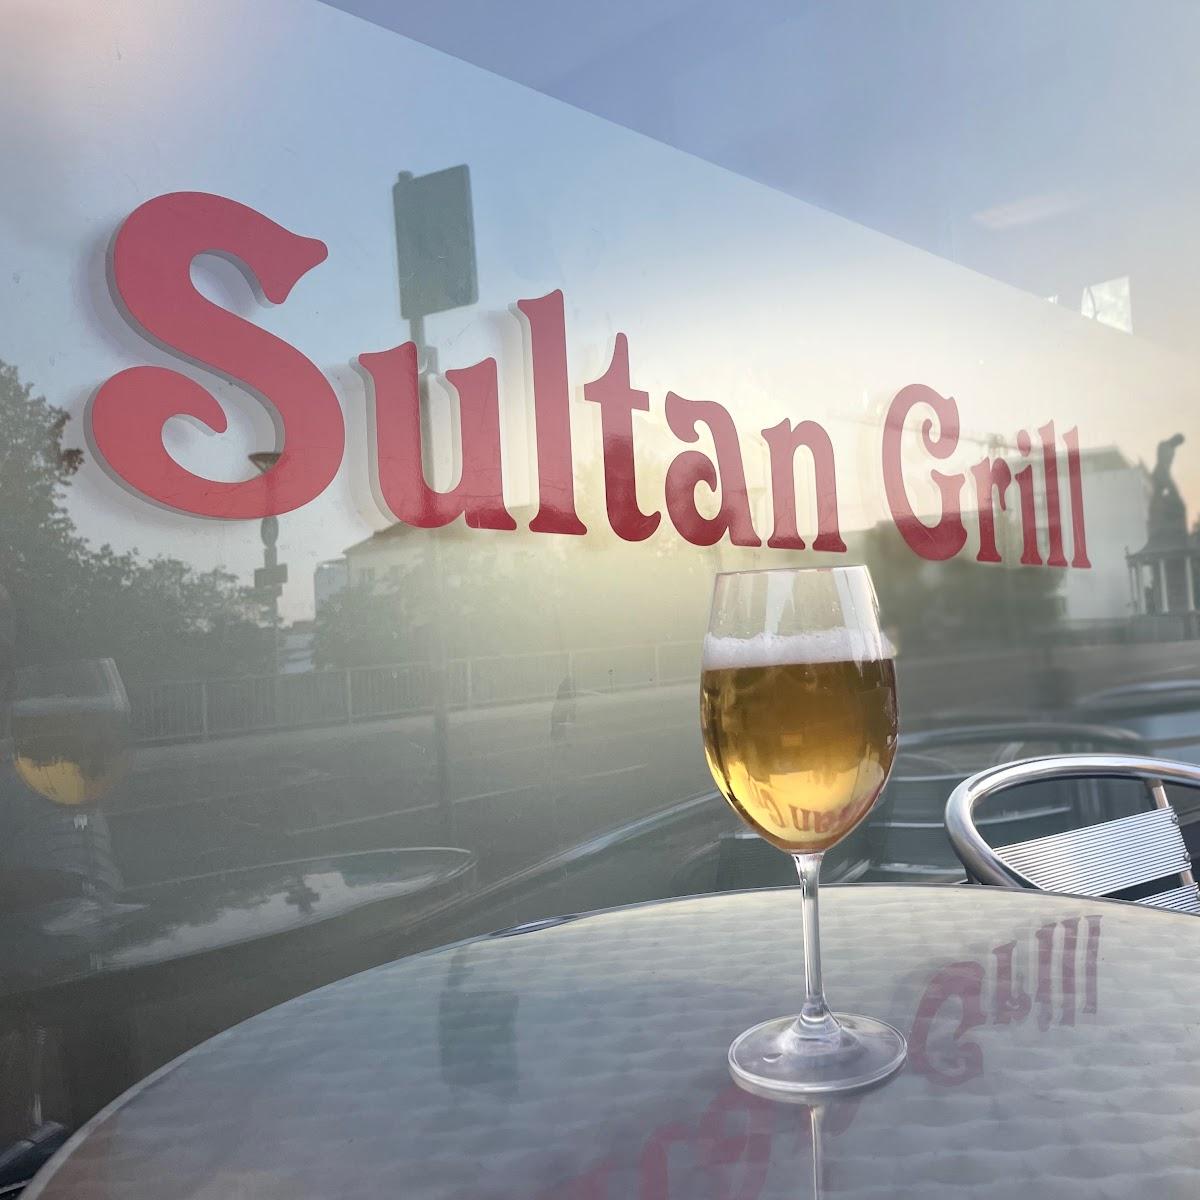 Restaurant "Sultangrill" in Pforzheim